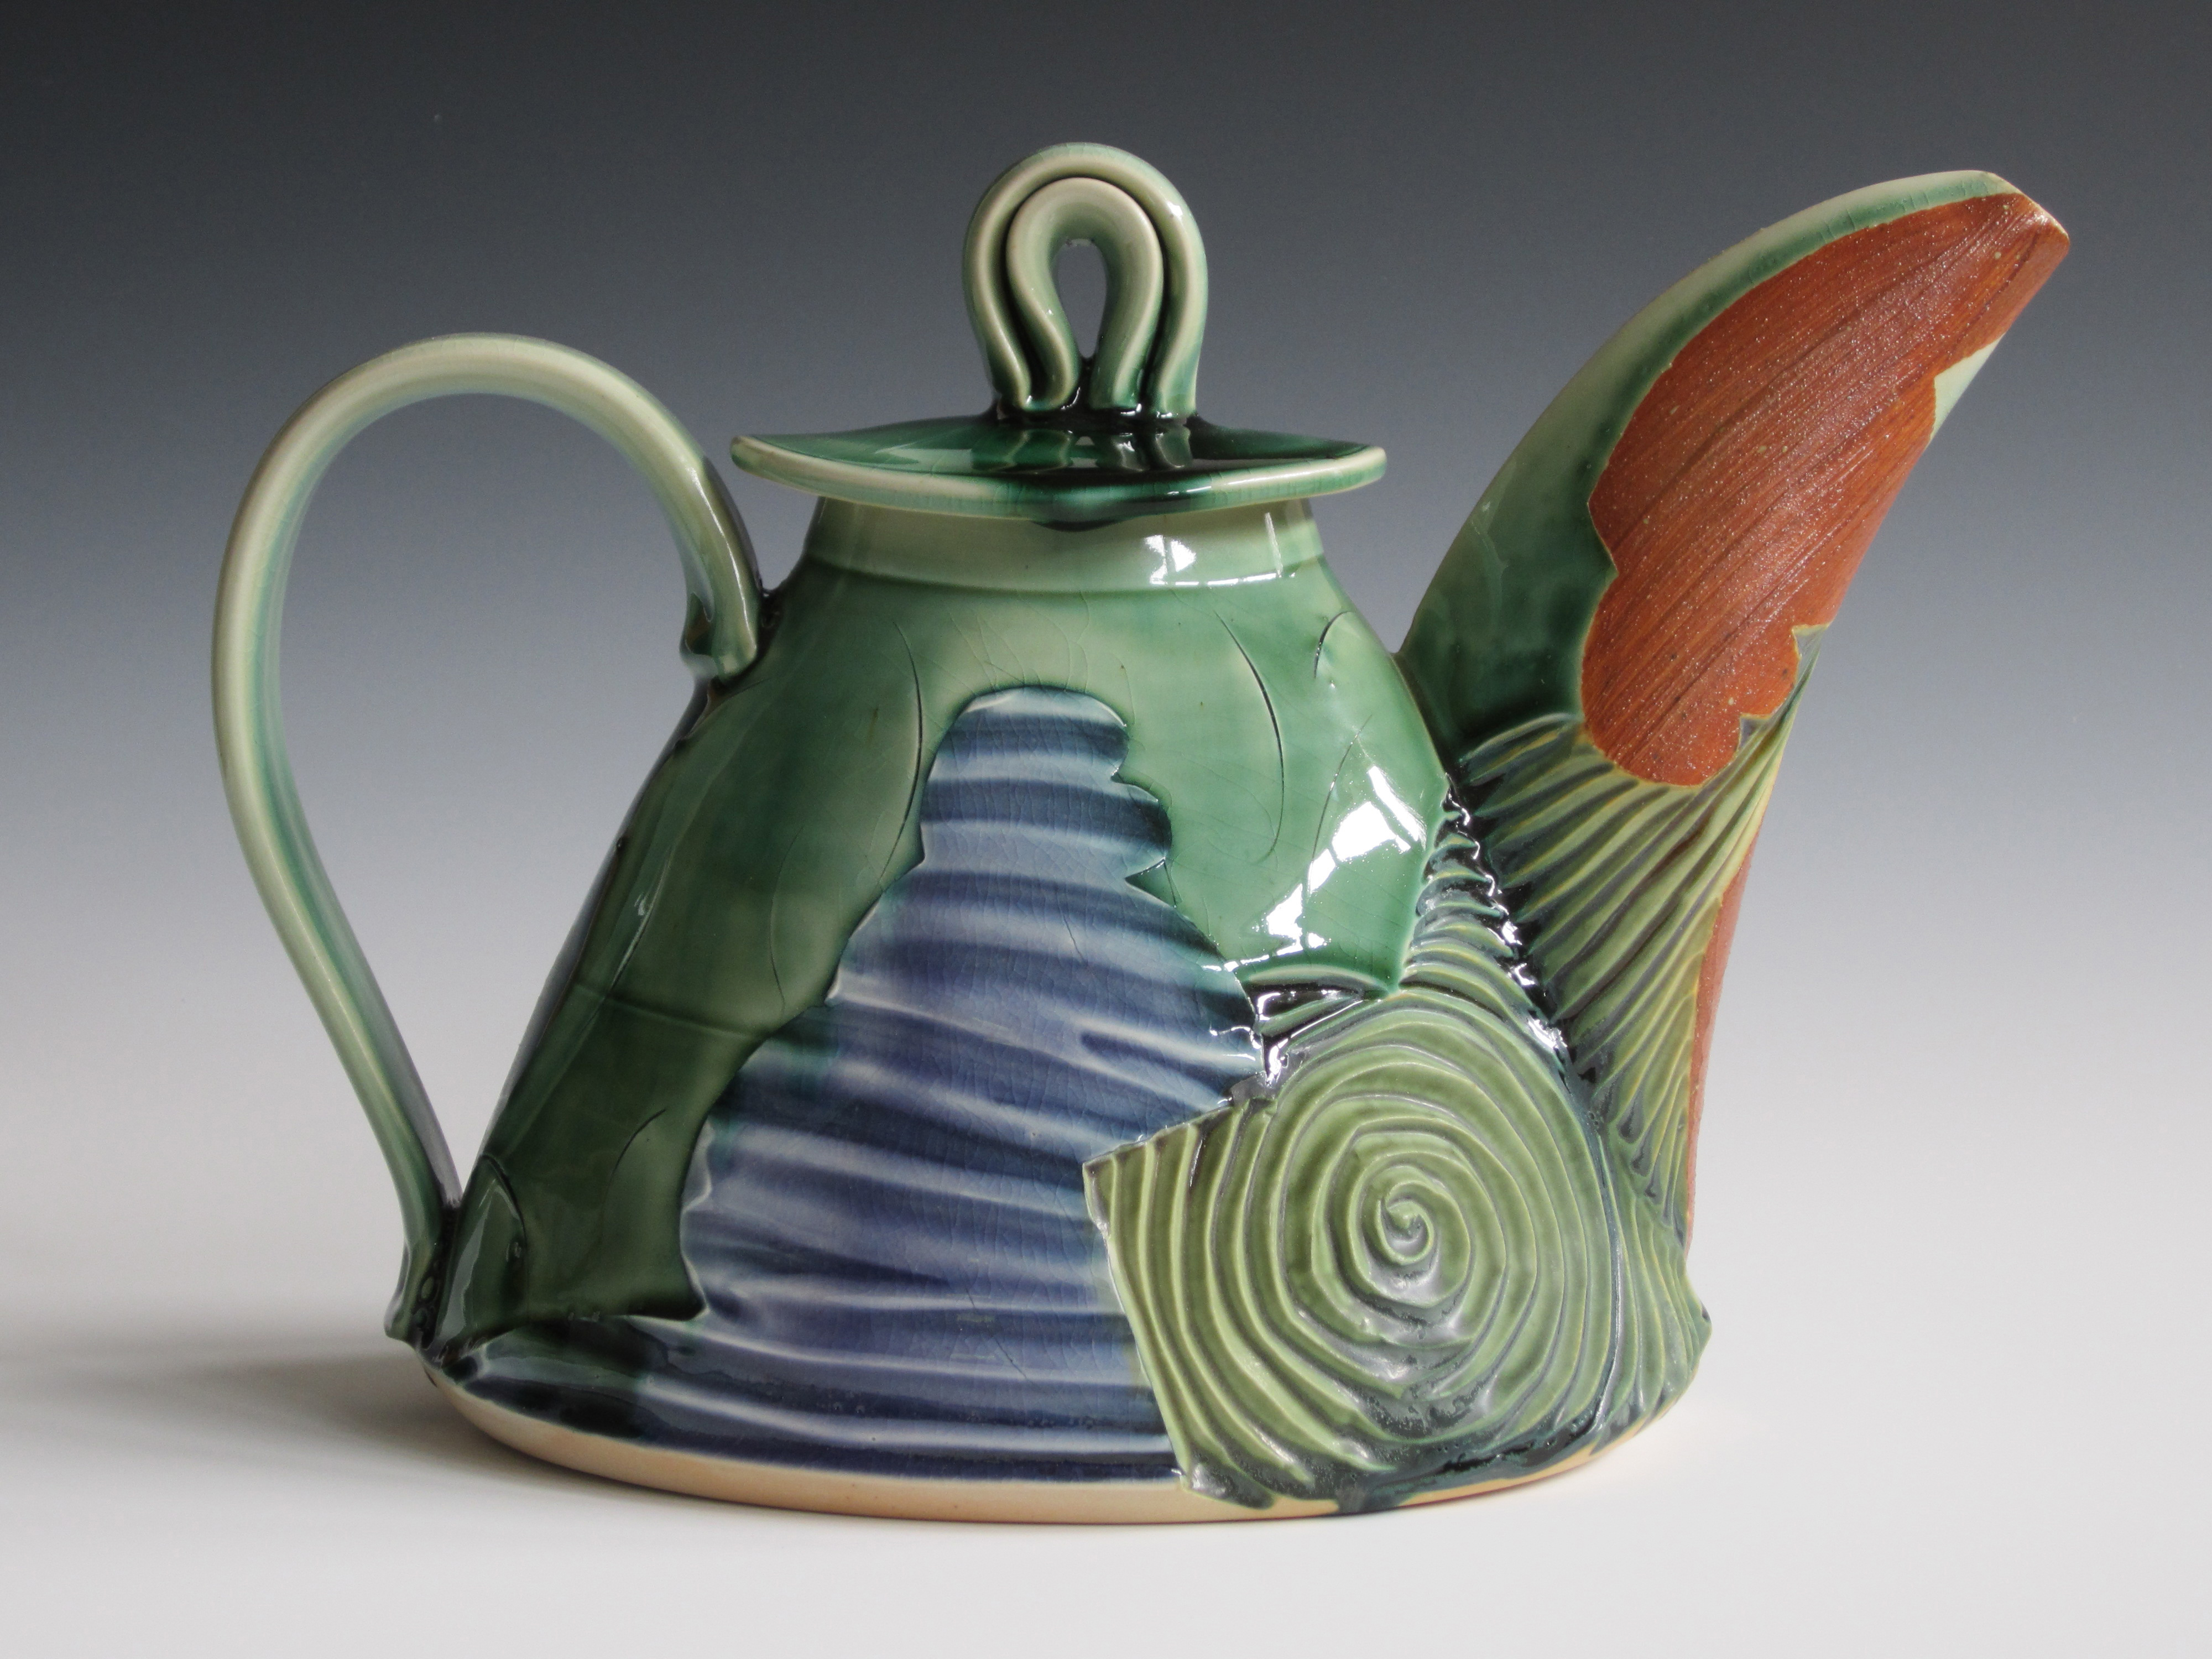 "Water & Sky Teapot" by Denise Woodward-Detrich